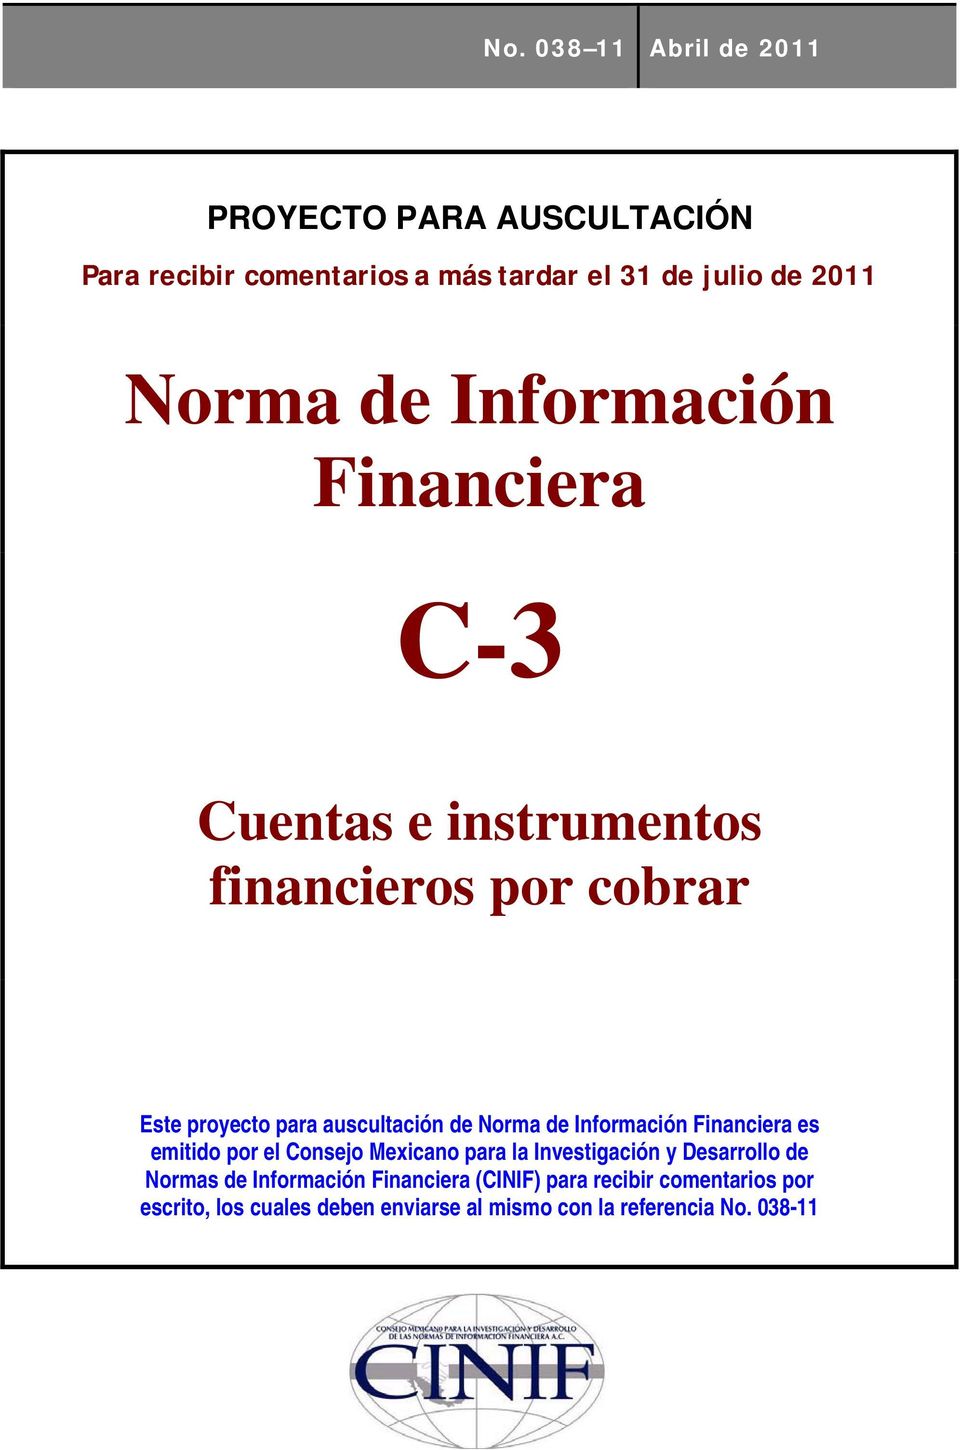 Información Financiera es emitido por el Consejo Mexicano para la Investigación y Desarrollo de Normas de Información